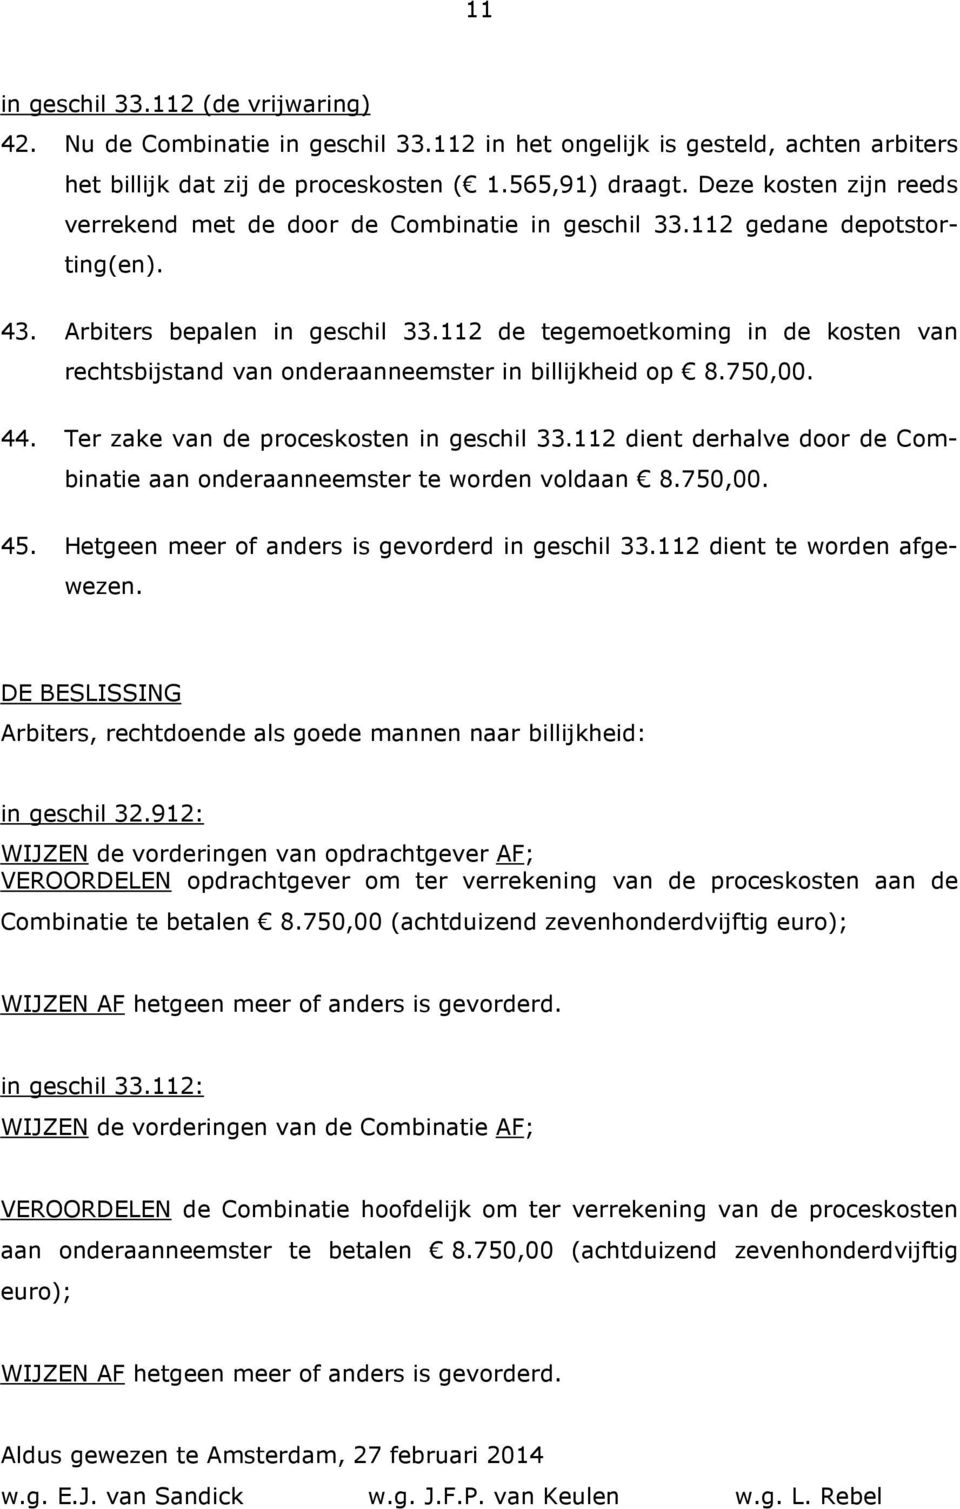 112 de tegemoetkoming in de kosten van rechtsbijstand van onderaanneemster in billijkheid op 8.750,00. 44. Ter zake van de proceskosten in geschil 33.